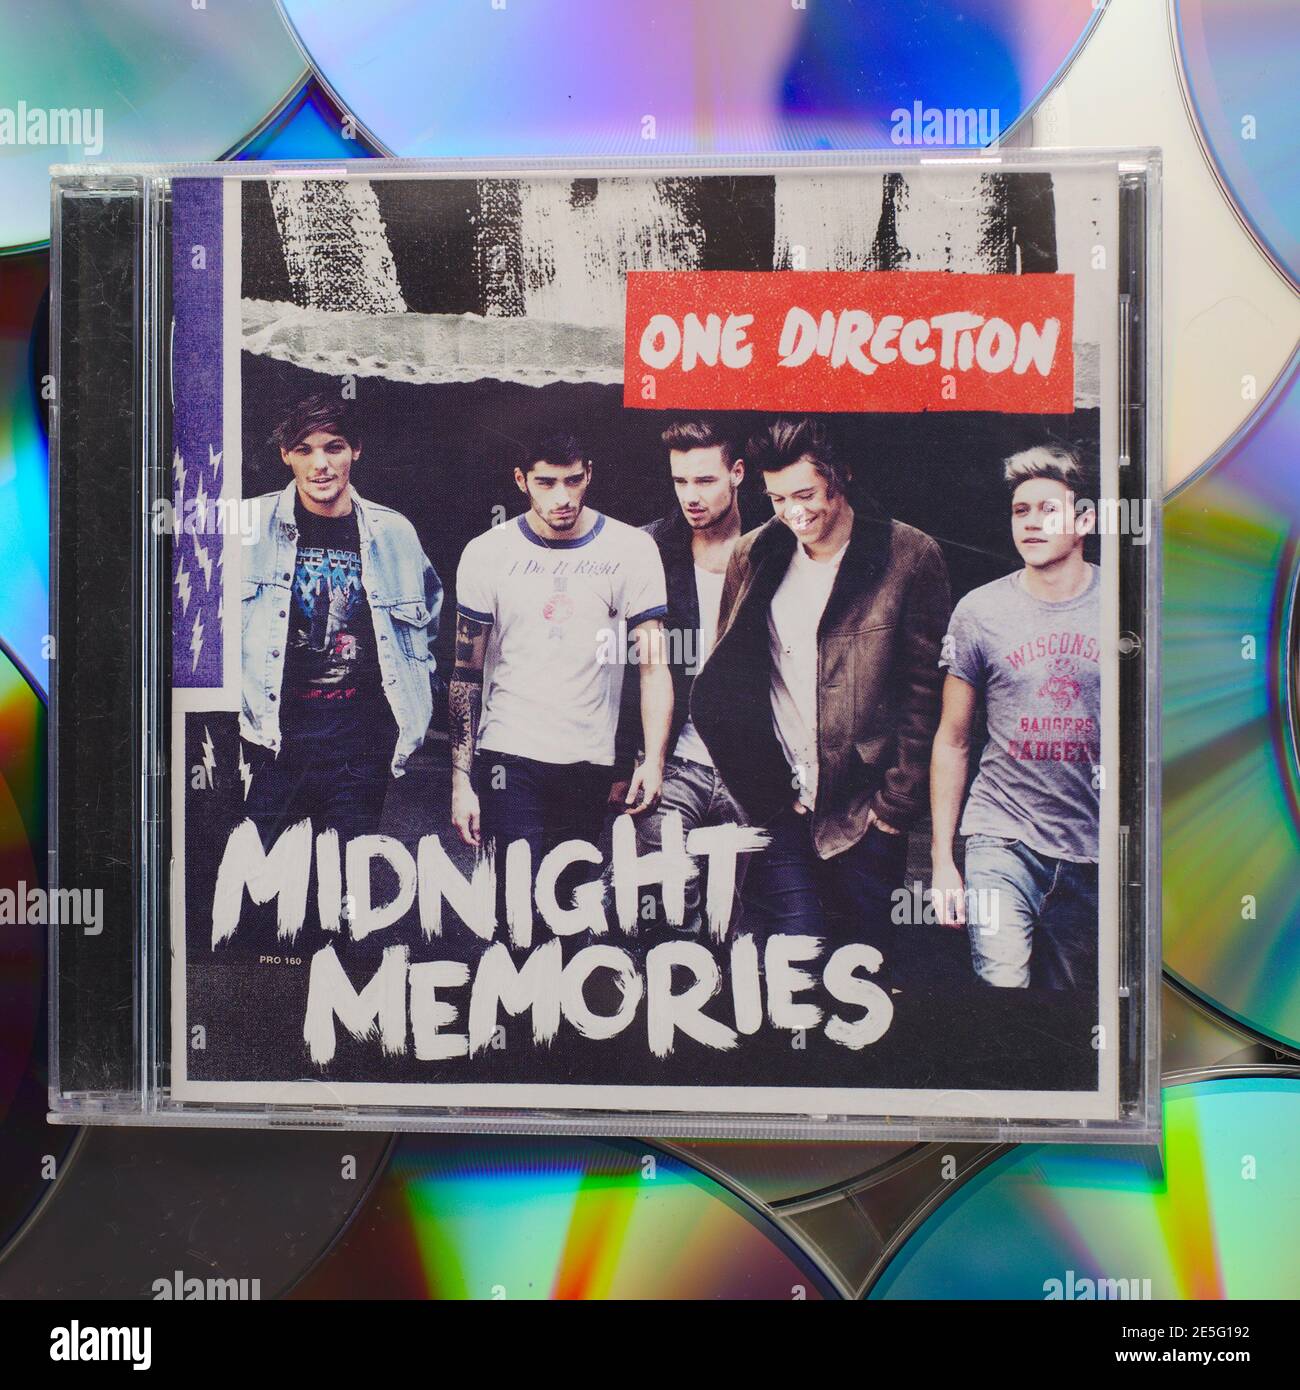 Una copia del álbum One Direction Midnight Memories On CD Foto de stock